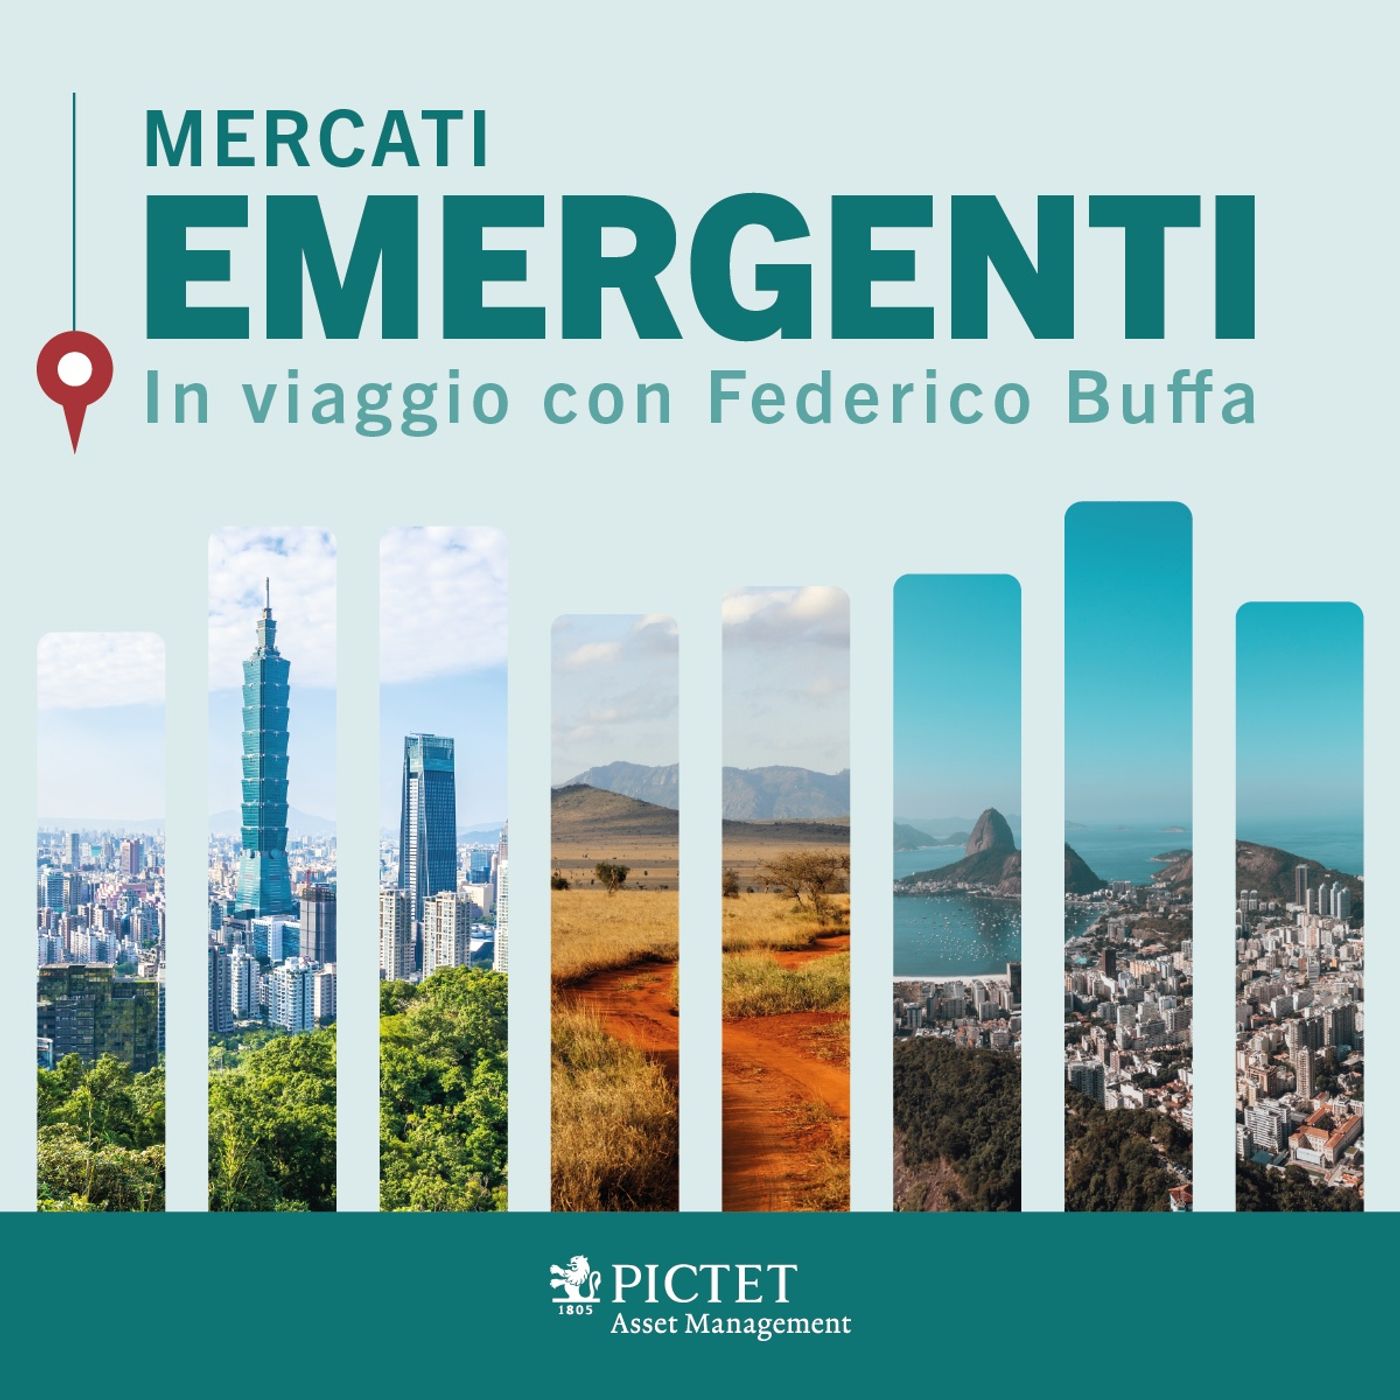 Dr Podcast - Mercati Emergenti - In viaggio con Federico Buffa